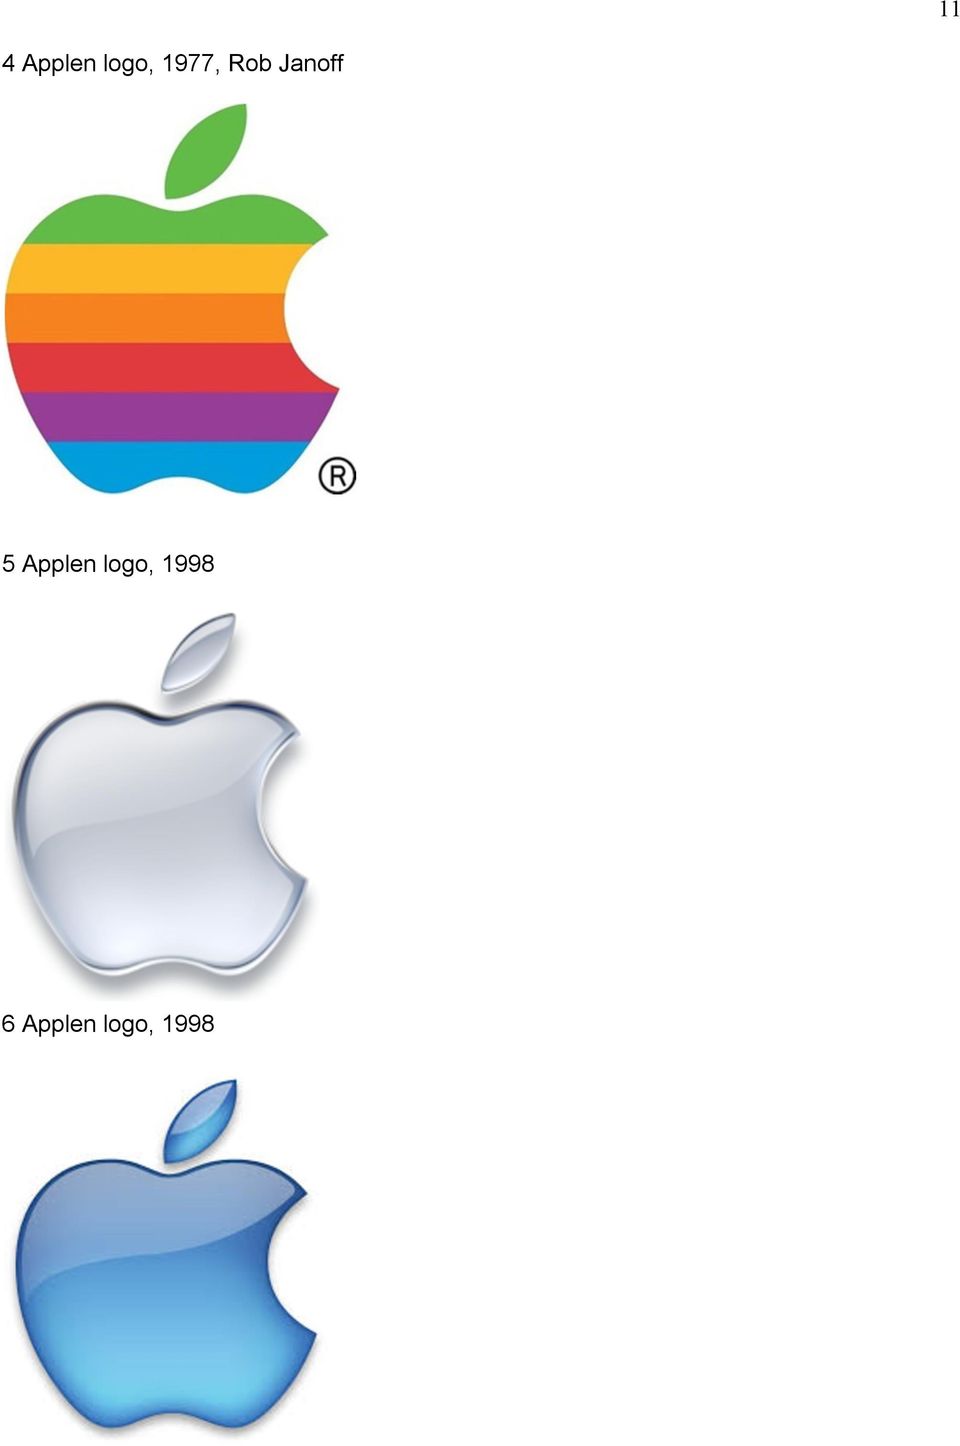 Applen logo, 1998